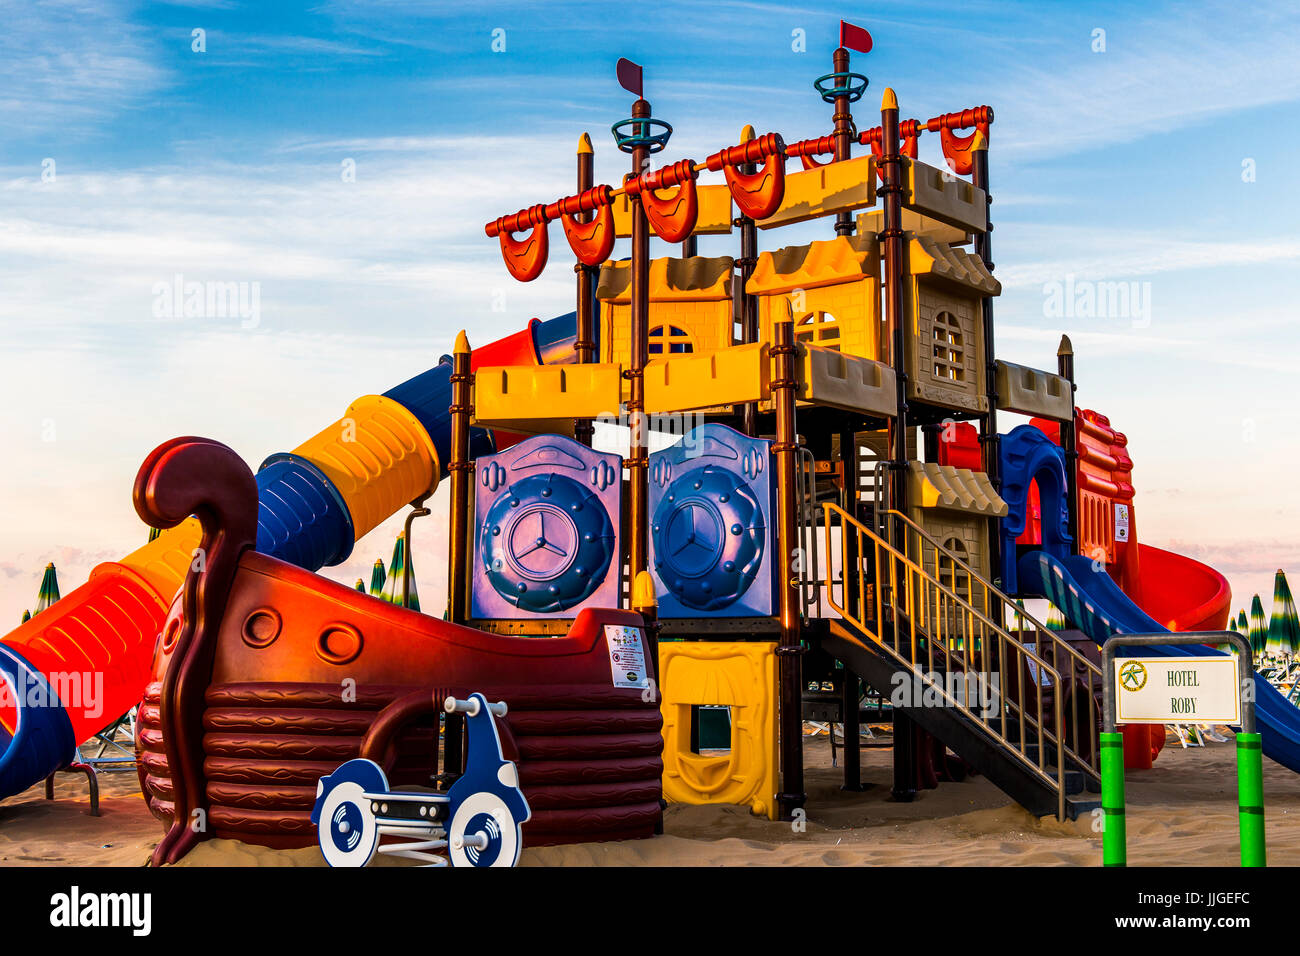 Playground ship immagini e fotografie stock ad alta risoluzione - Alamy